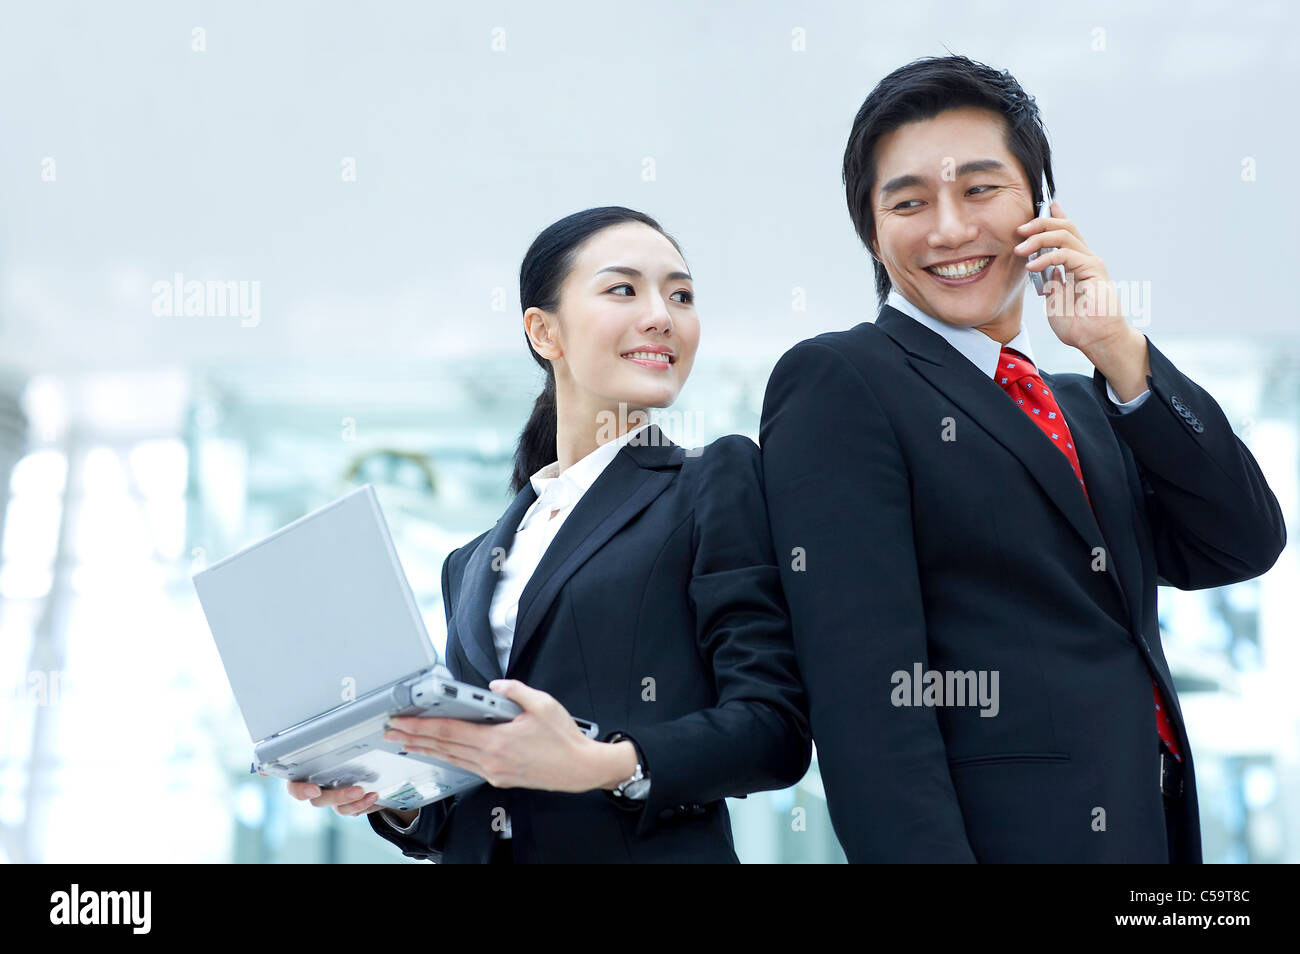 Vue latérale du businessman talking on mobile phone while businesswoman holding laptop Banque D'Images